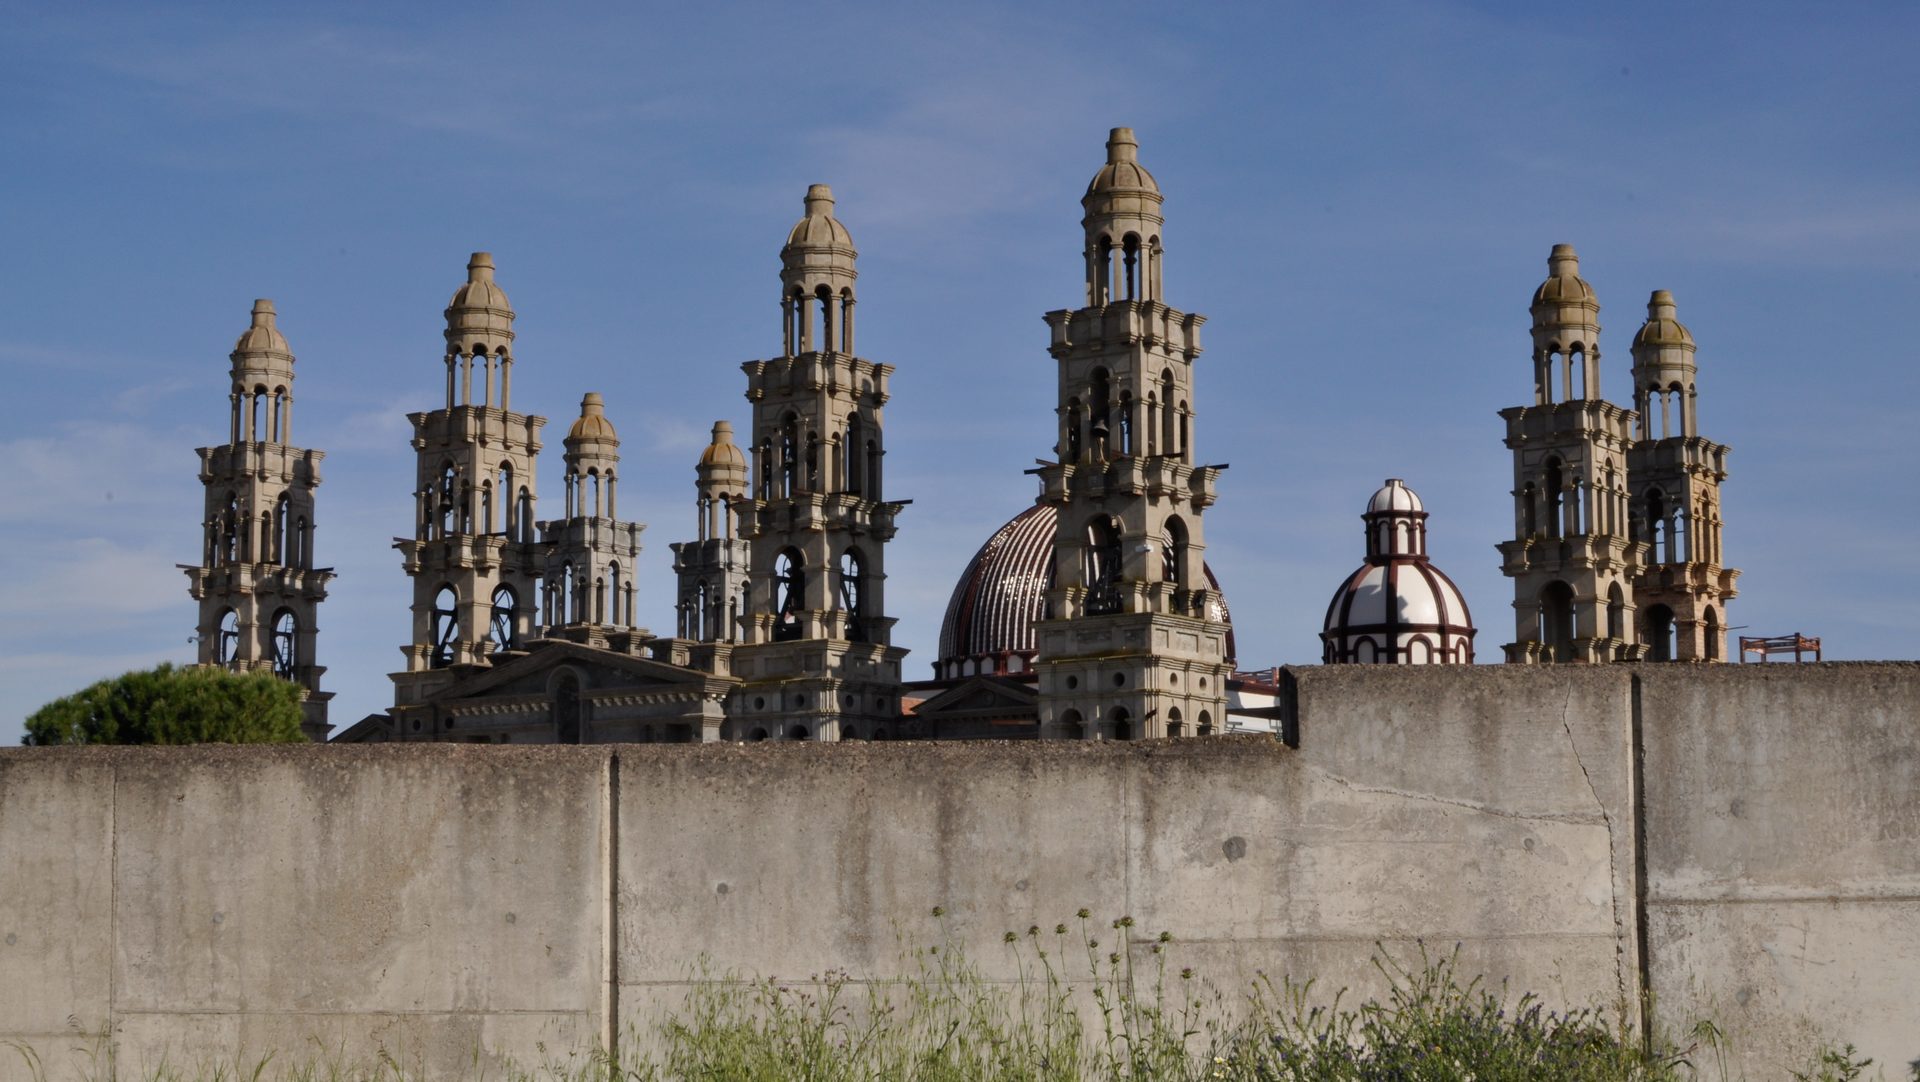 La basilique de Palmar de Troya, en Andalousie, siège de l'Eglise palmarienne dissidente (photo Flickr acojona CC BY 2.0)